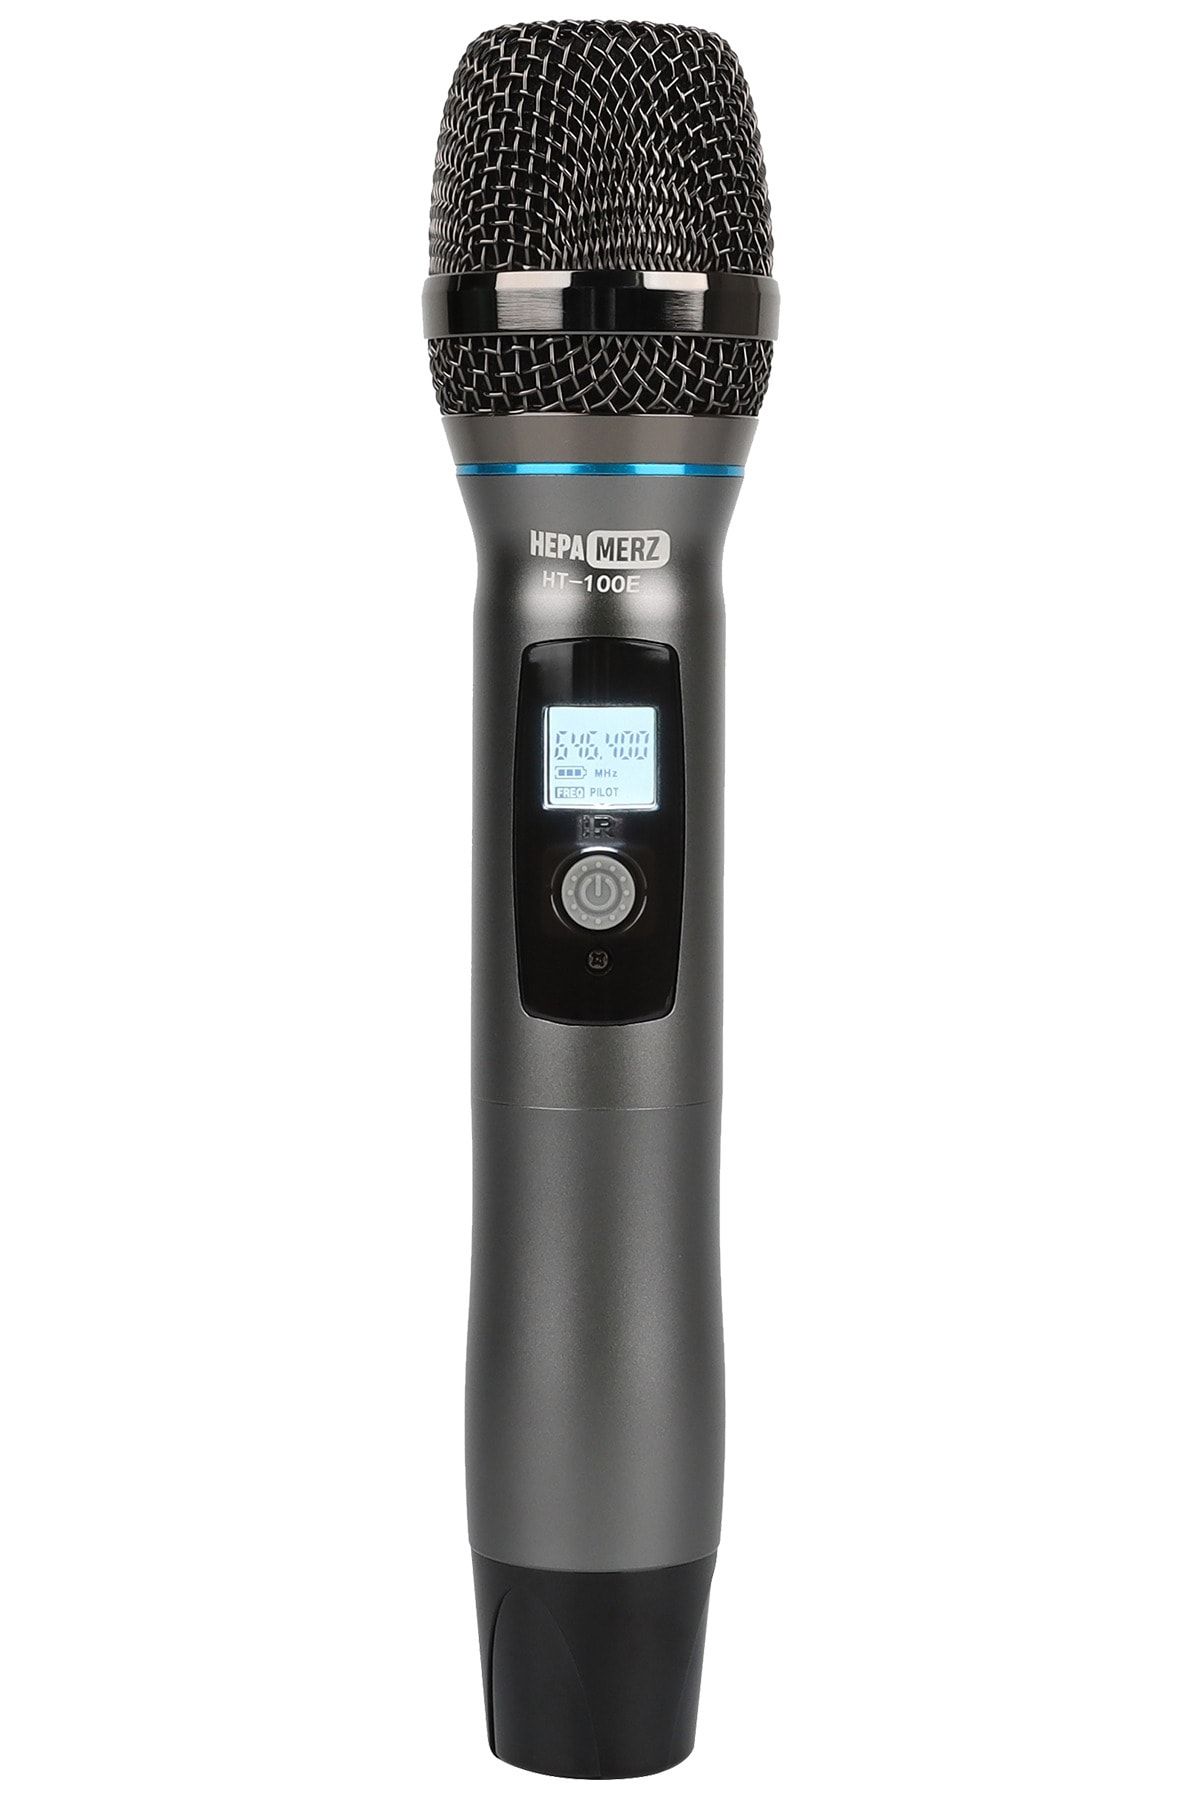 Hepa-Merz Hepa Merz Ht-100e Verici Kablosuz El Mikrofonu ( Hm-444 Ve Hm-888 Alıcı Ile Çalışabilir )